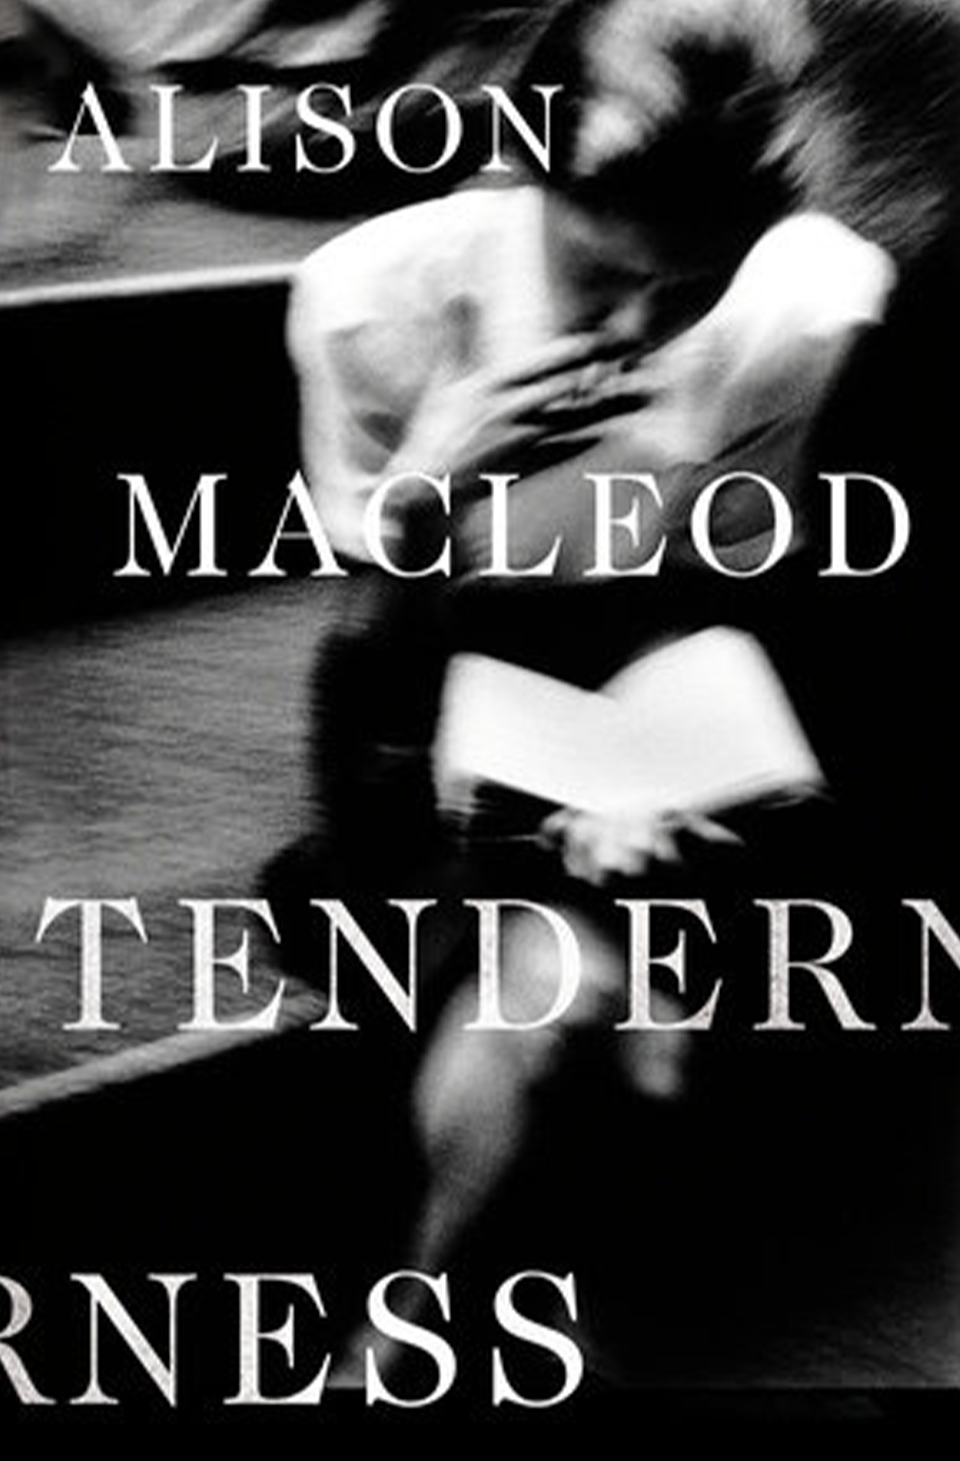 Tenderness by Alison MacLeod